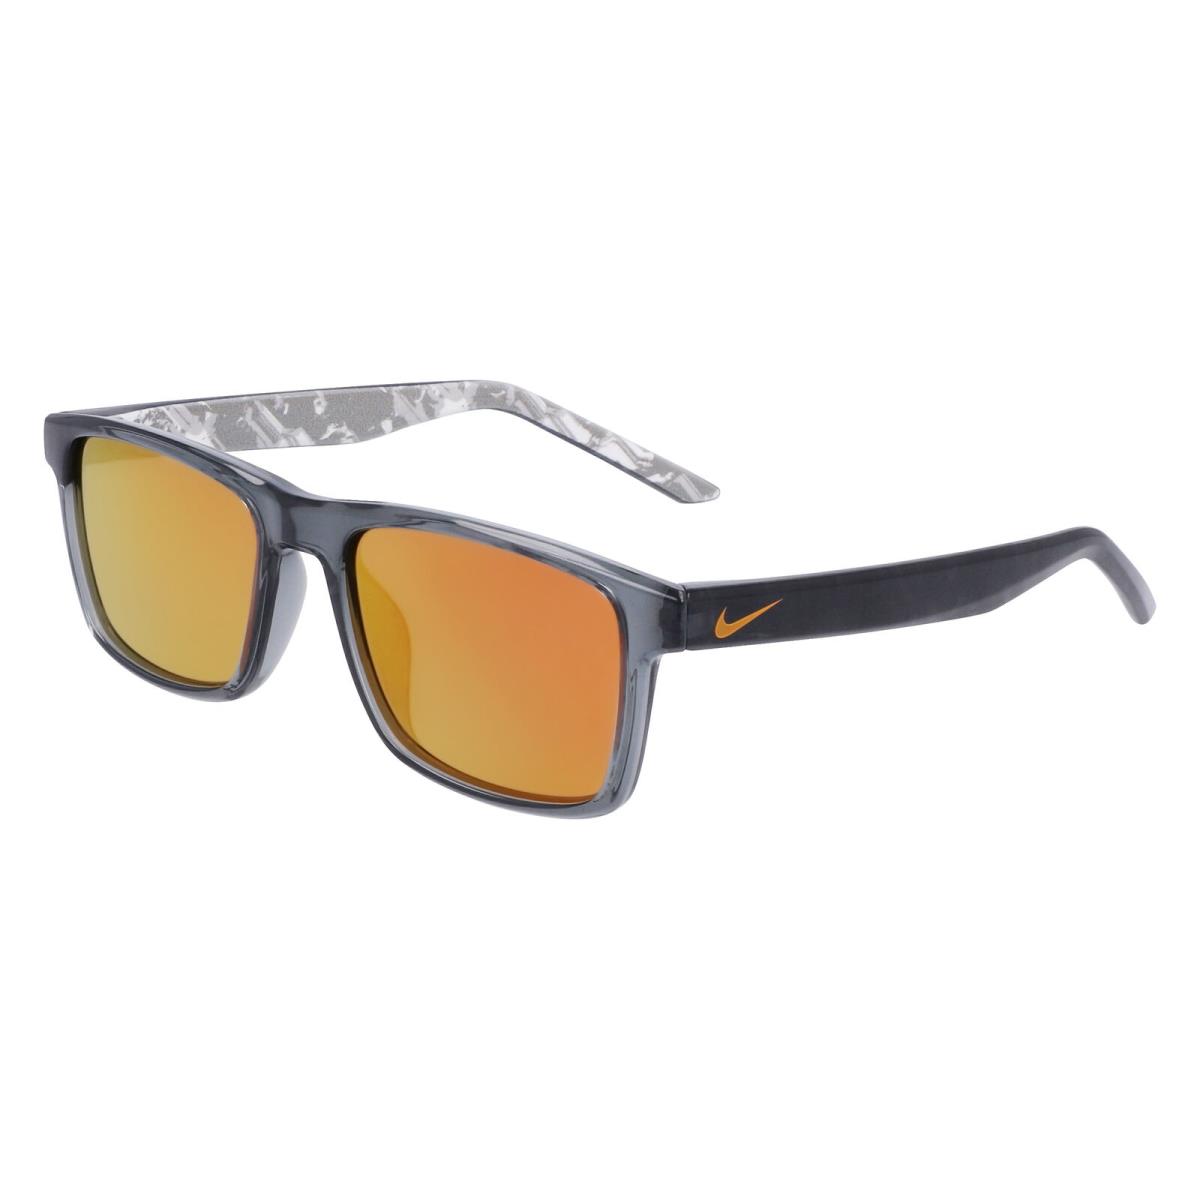 Nike Cheer M DZ 7381 DZ7381 Dark Grey Orange Mirror 021 Sunglasses